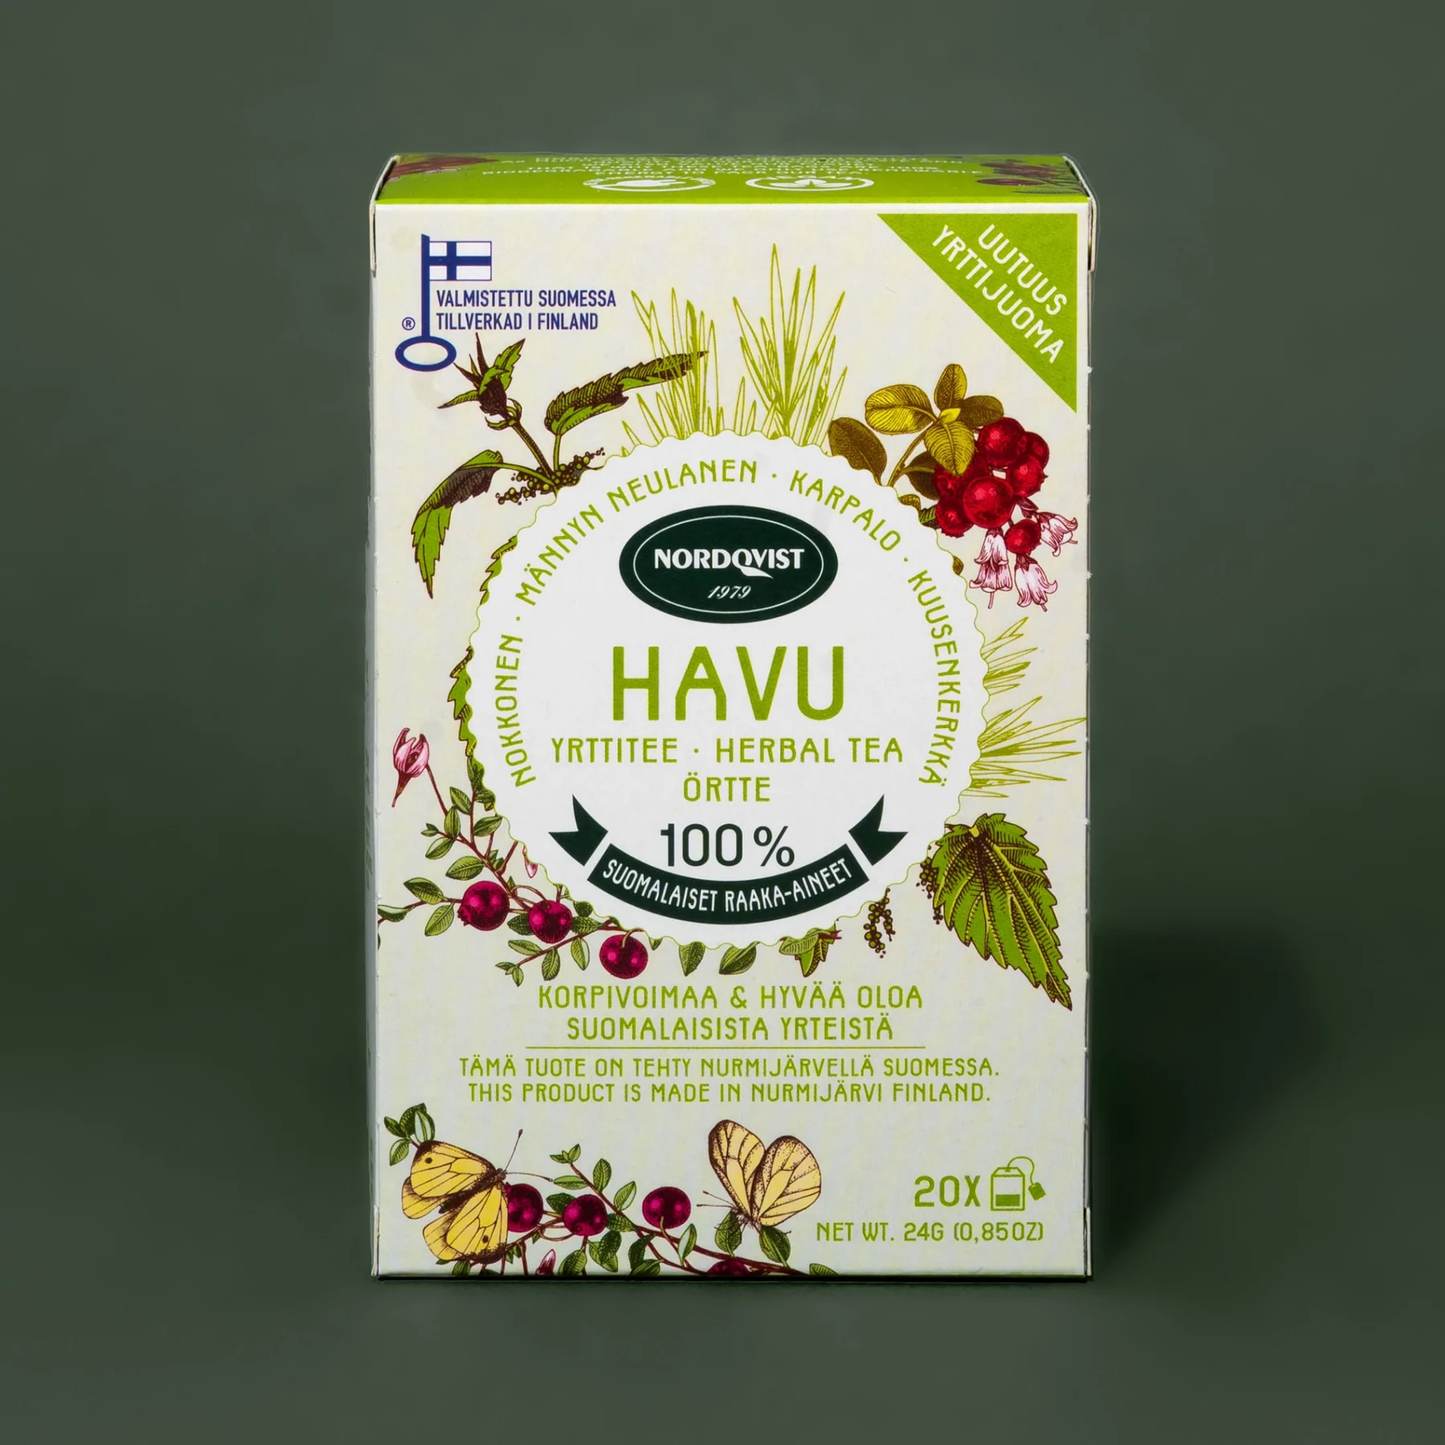 HAVU pure herbal tea grown in Finland